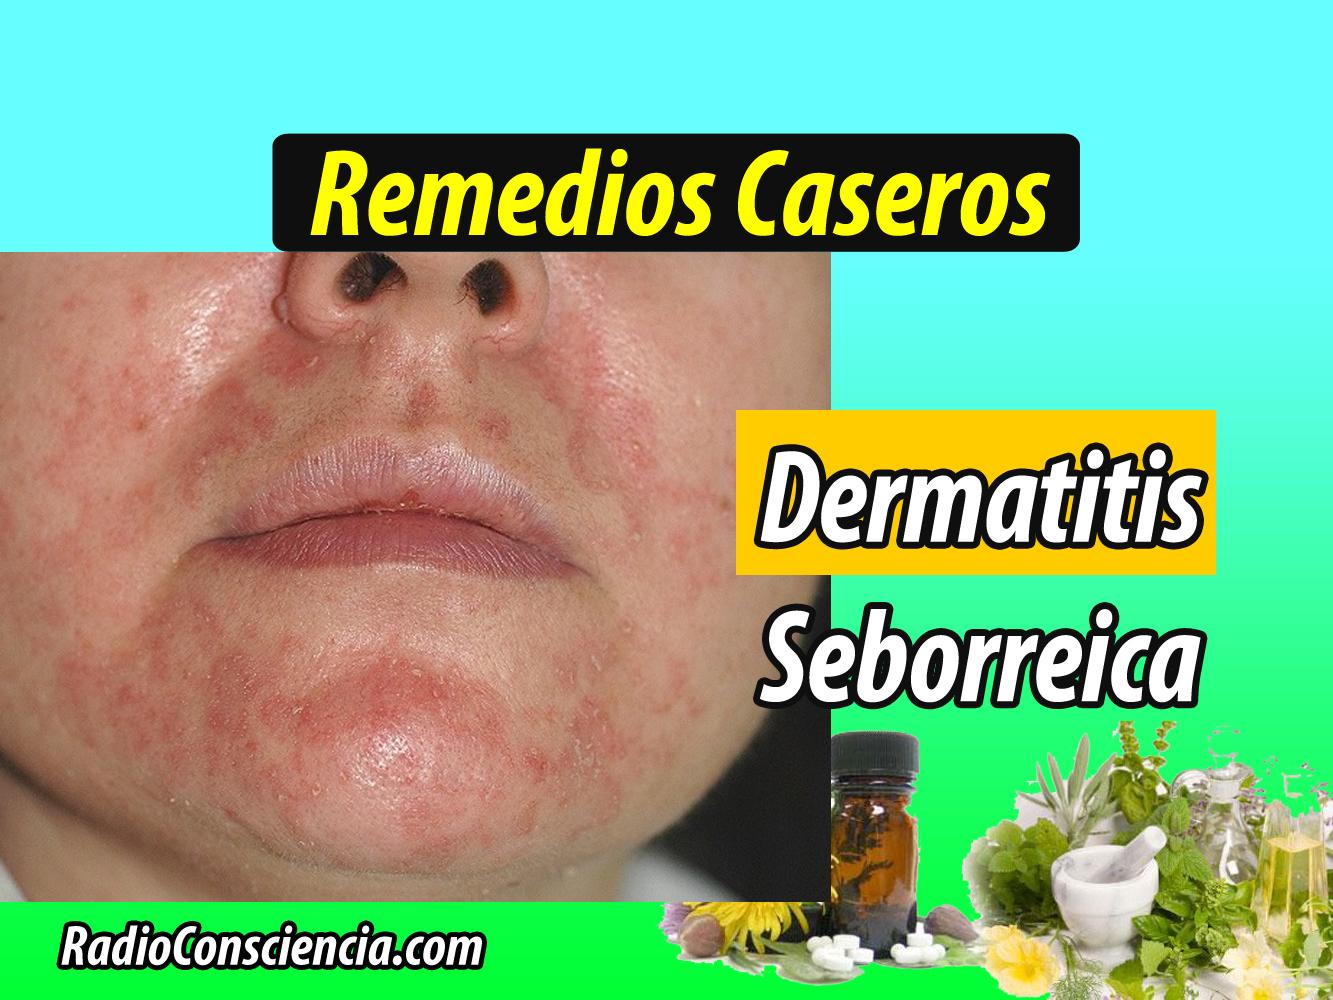 Medicina Casera: Remedio para la Dermatitis seborreica ...